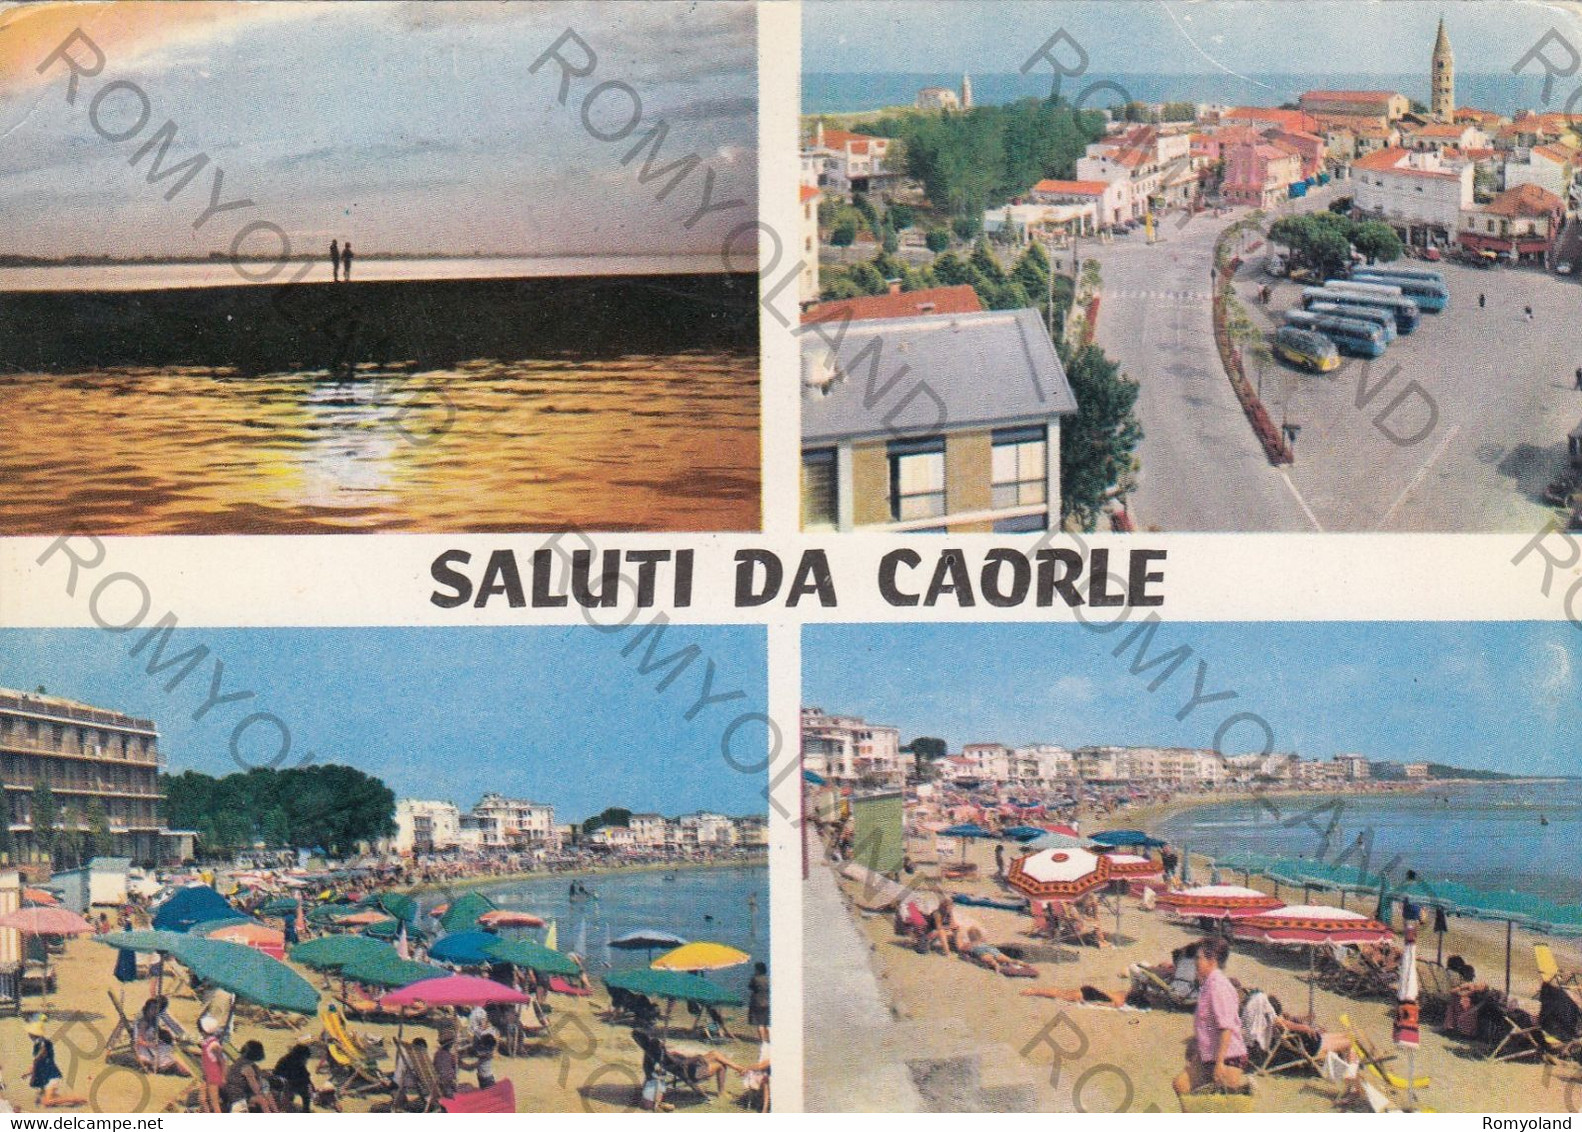 CARTOLINA SALUTI DA CAORLE, VENEZIA, VENETO,SPIAGGIA, MARE, SOLE, VACANZA, ESTATE, BARCHE A VELA  VIAGGIATA 1965 - Venezia (Venice)